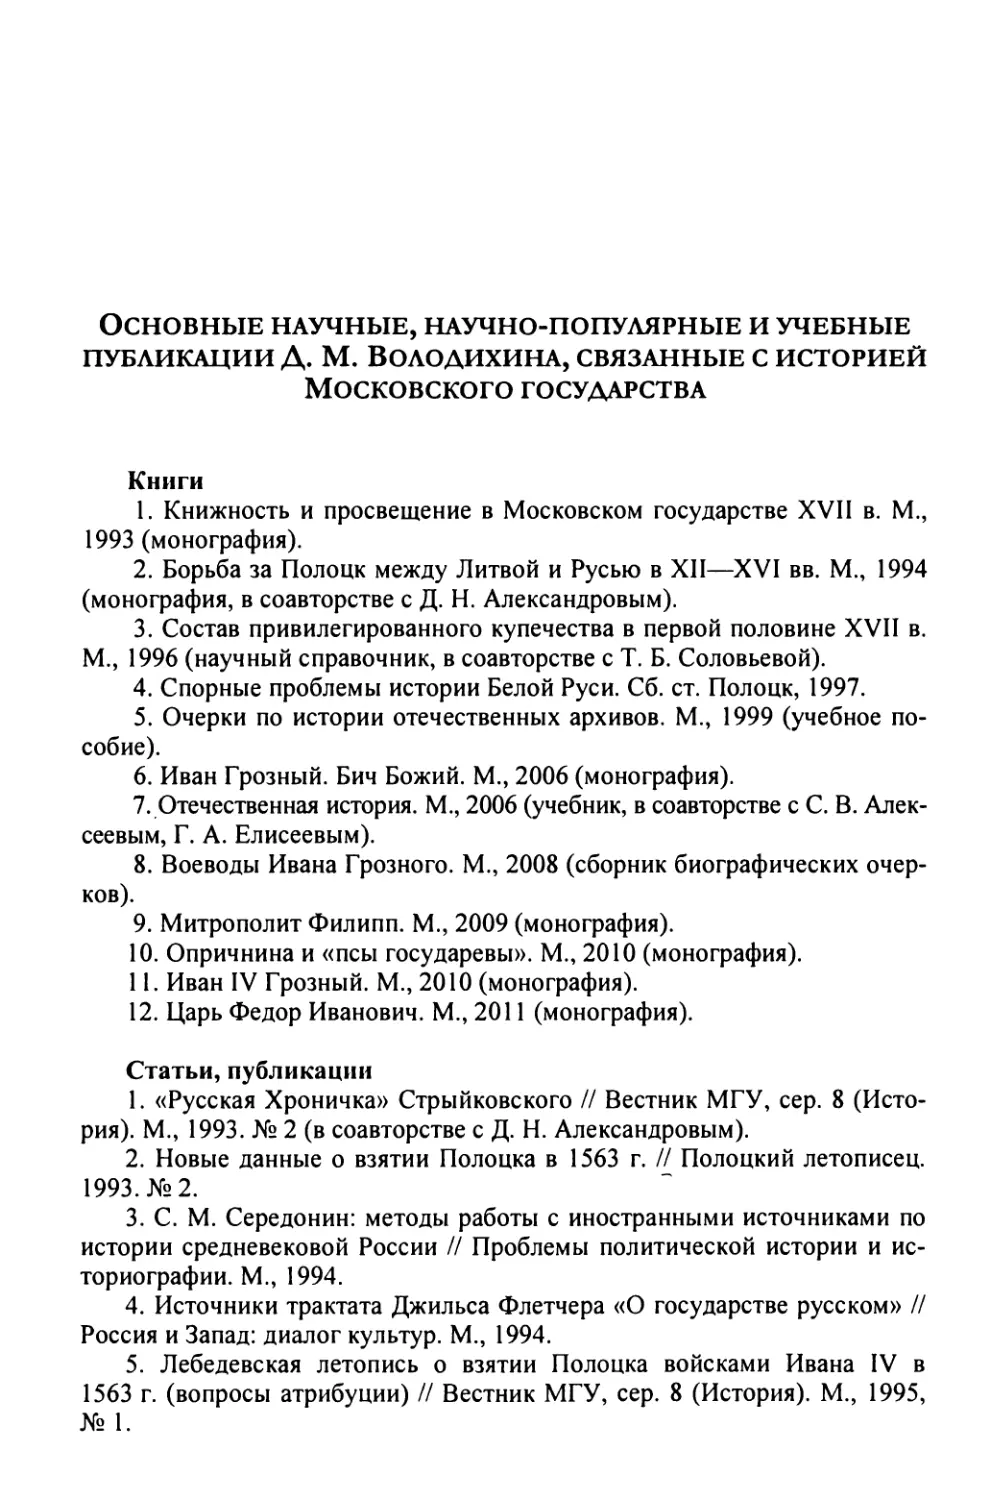 Основные научные, научно-популярные и учебные публикации Д.М. Володихина, связанные с историей Московского государства